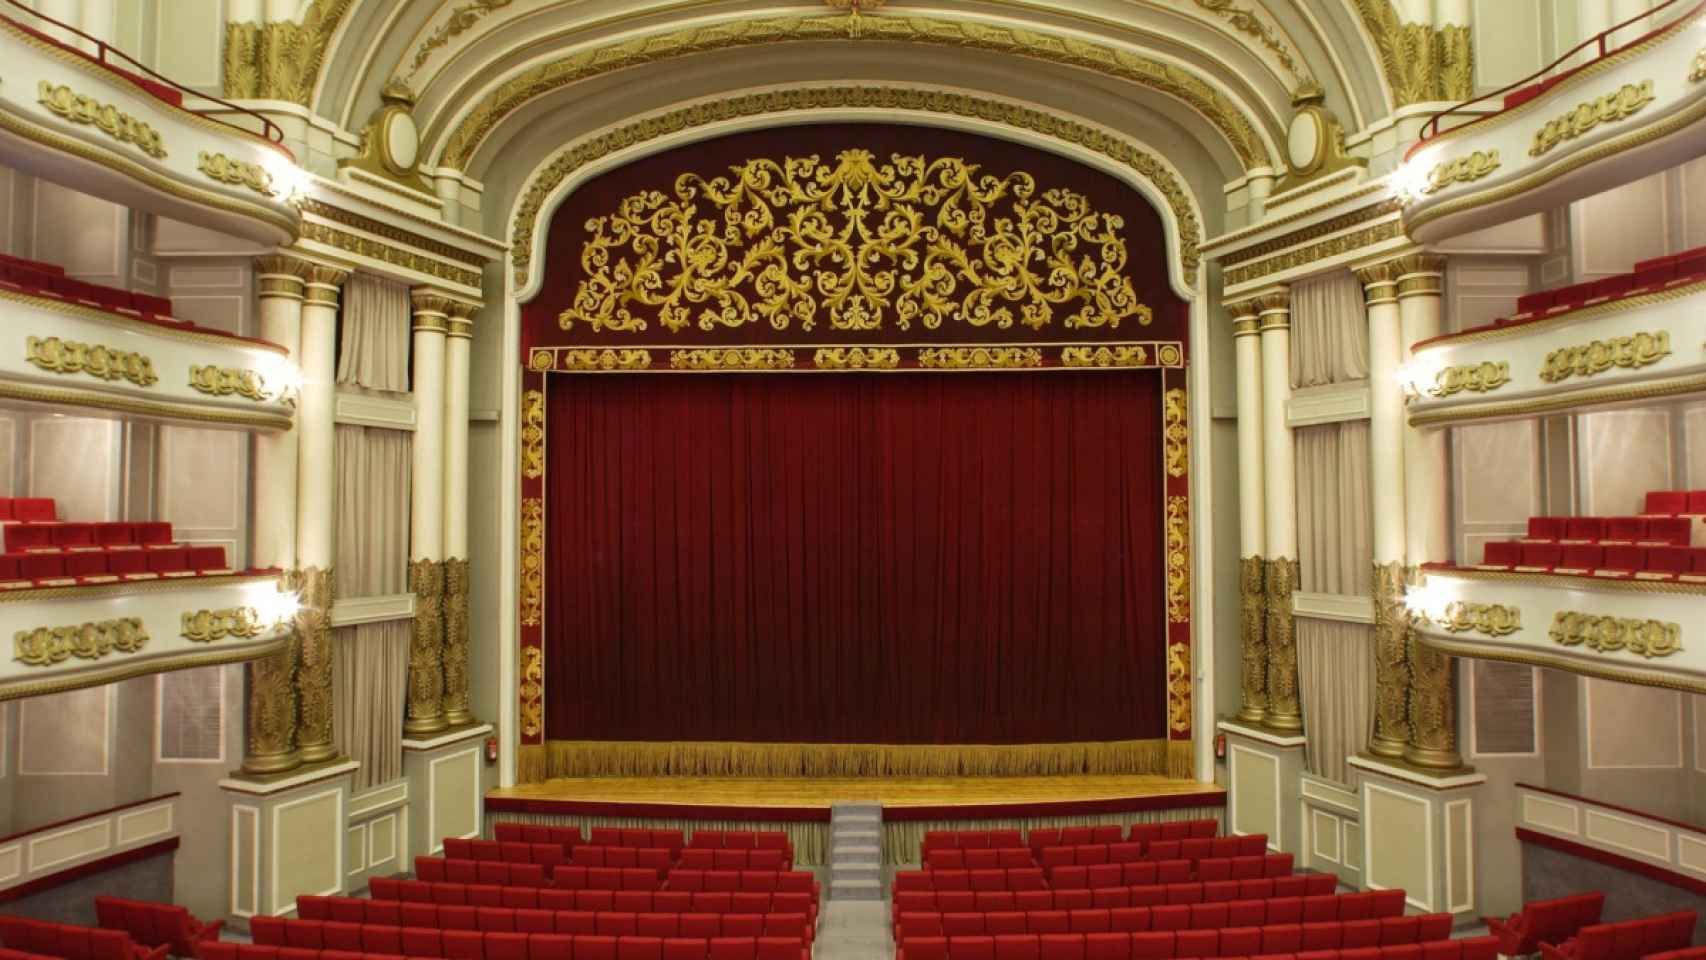 Teatro Afundación en Vigo.